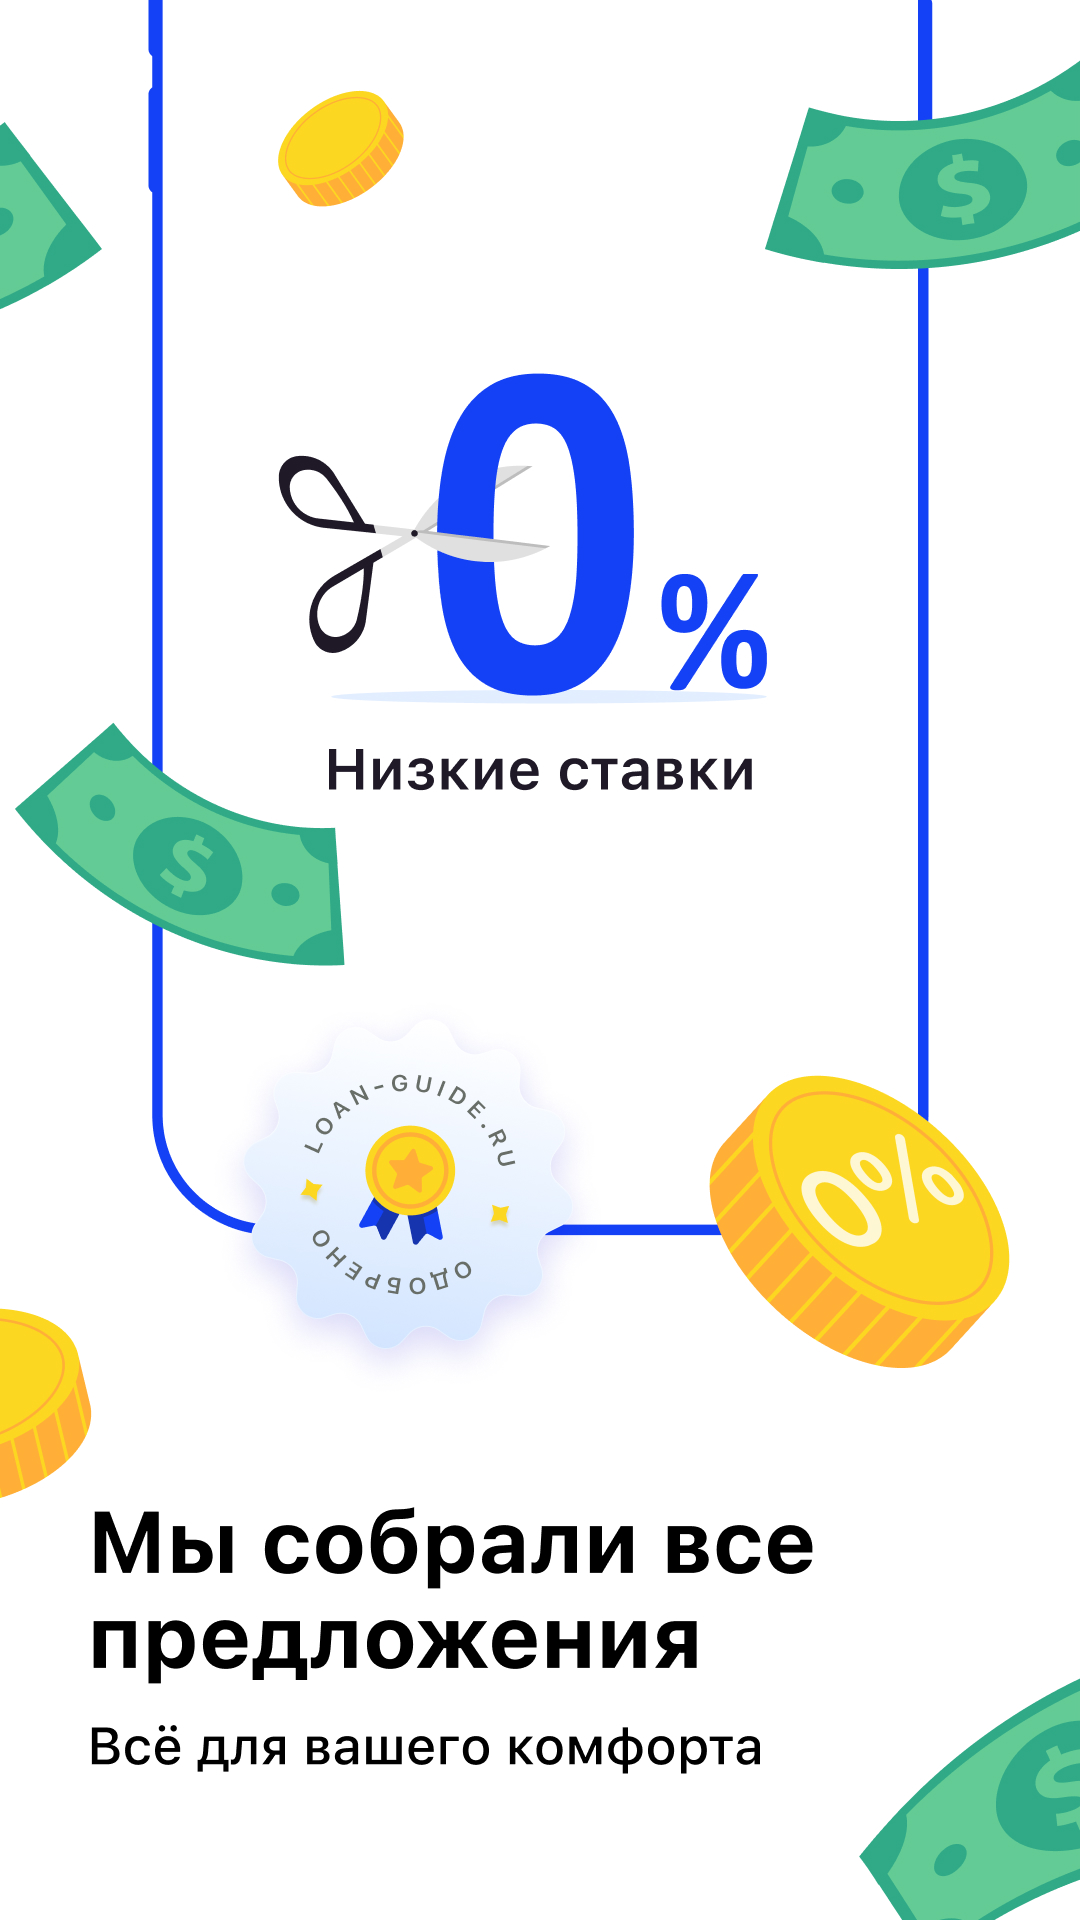 Займ на карту & Кредит до зарплаты - деньги срочно скачать бесплатно  Финансы на Android из каталога RuStore от Сурен Саркисов Сергеевич